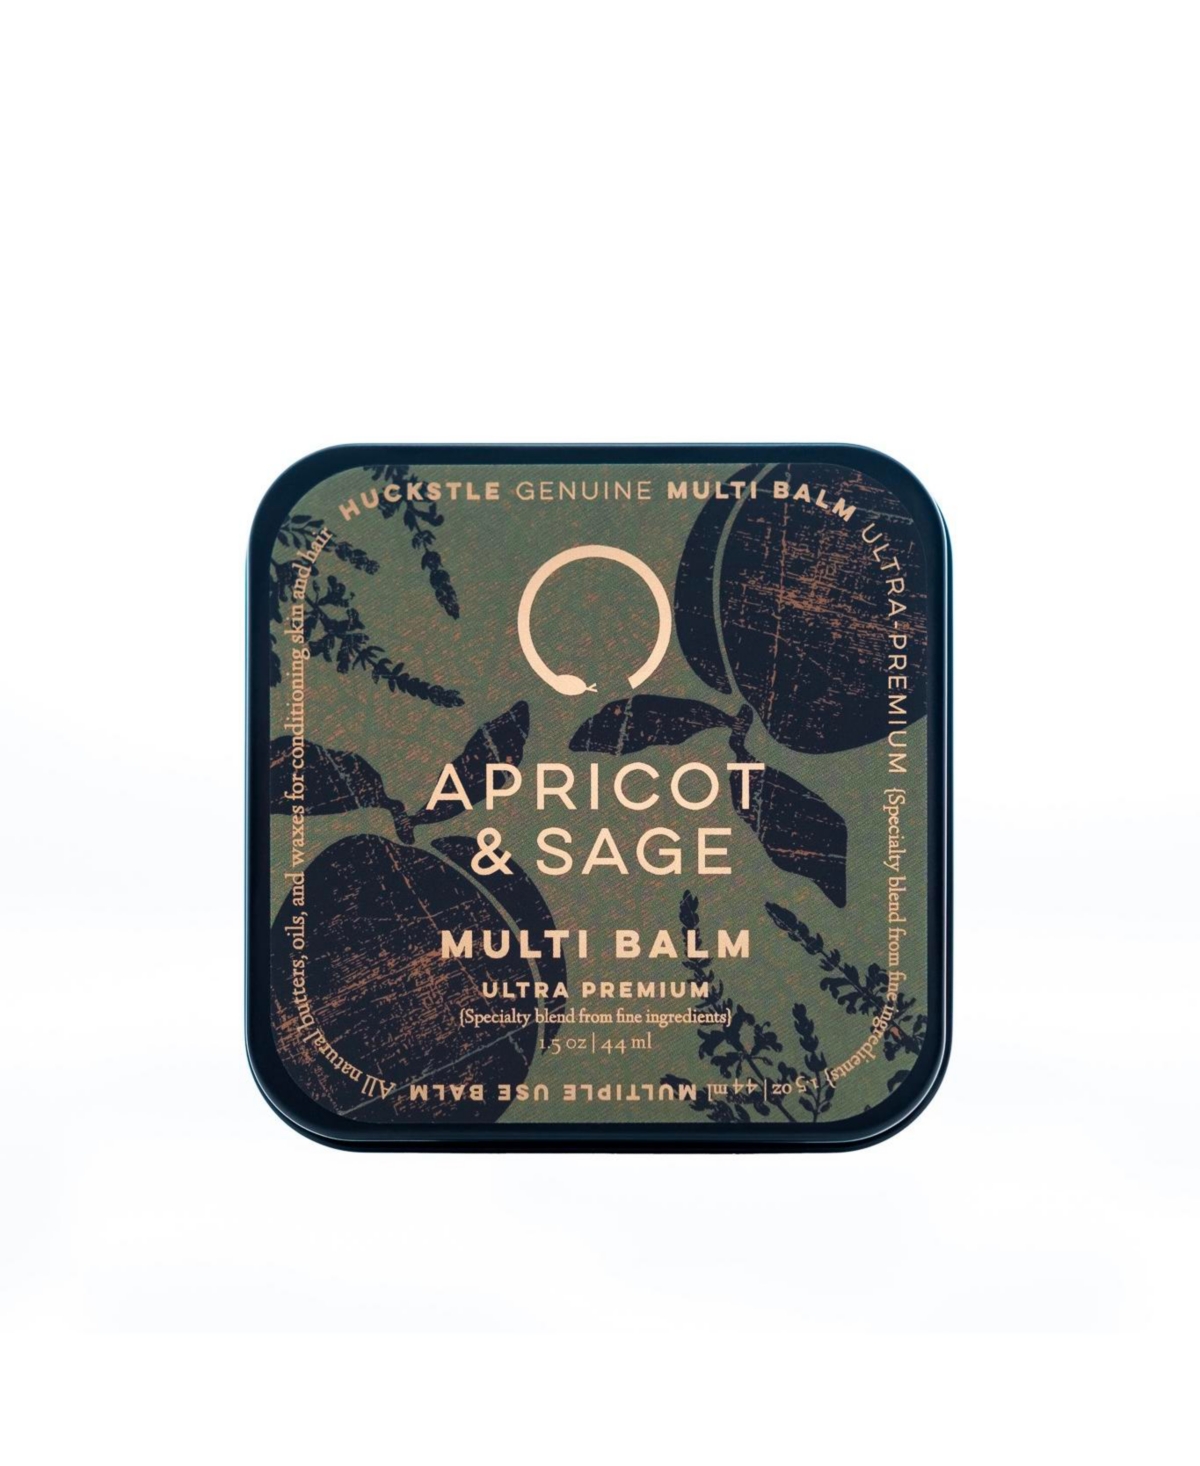 Huckstle Apricot & Sage Multi-Balm- Premium Skin and Hair Conditioner, 1.5 oz